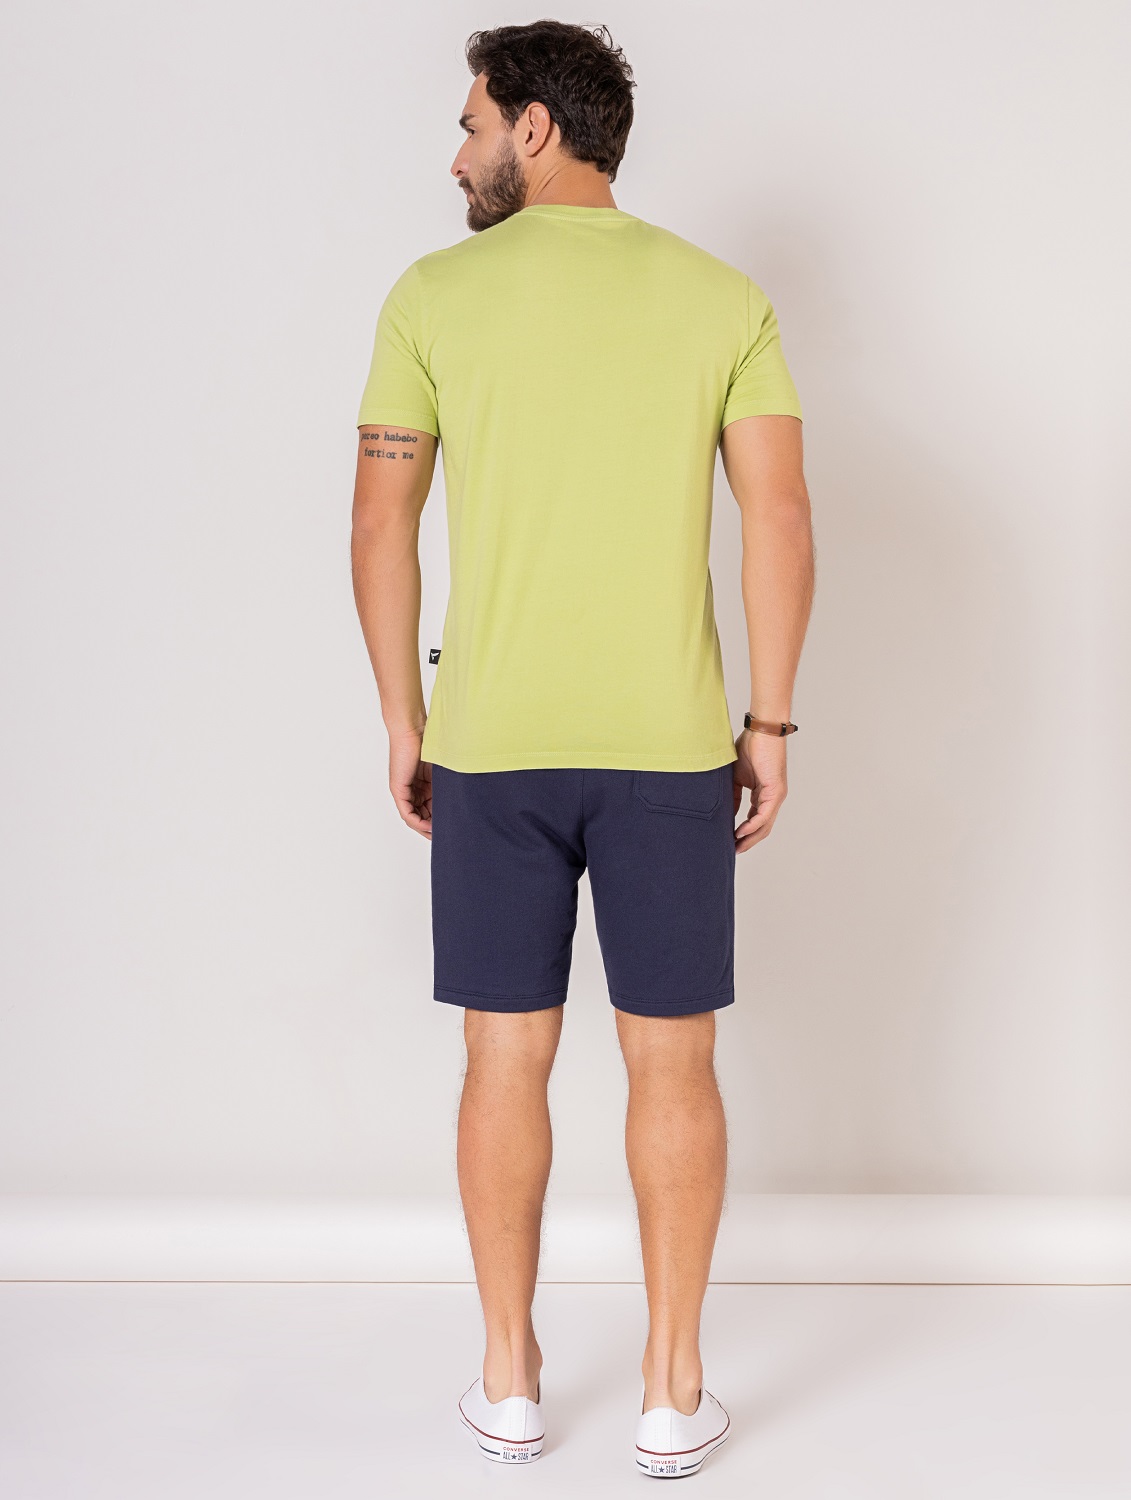 Camiseta Básica de Algodão Masculina Verde - OVBK